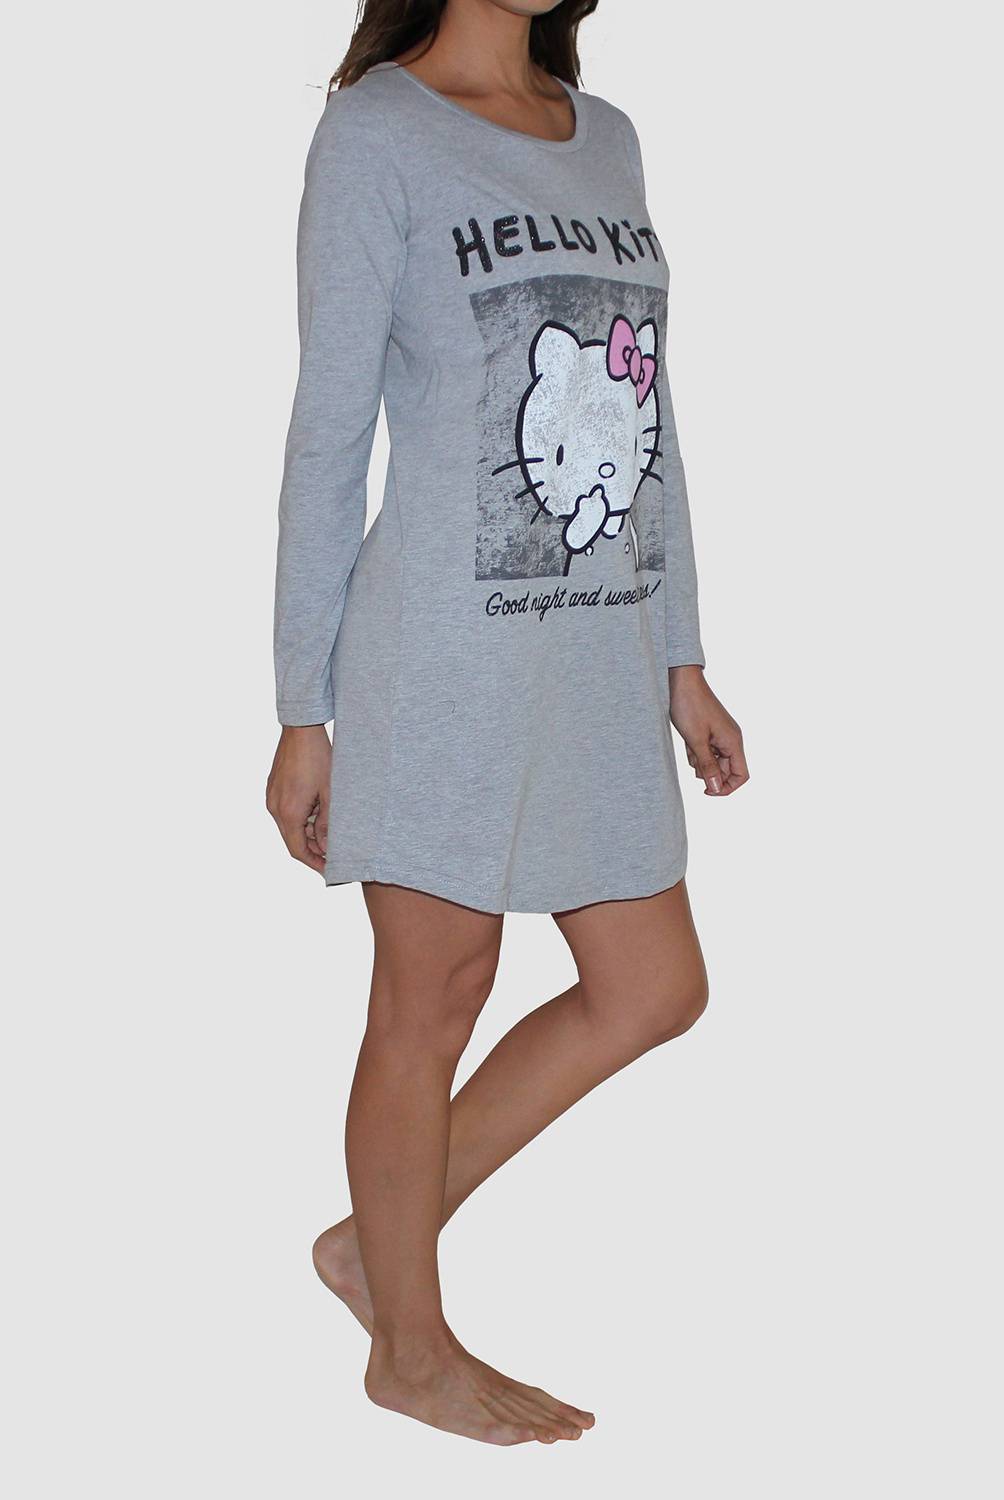 HELLO KITTY - Hello Kitty Camisa De Dormir Mujer